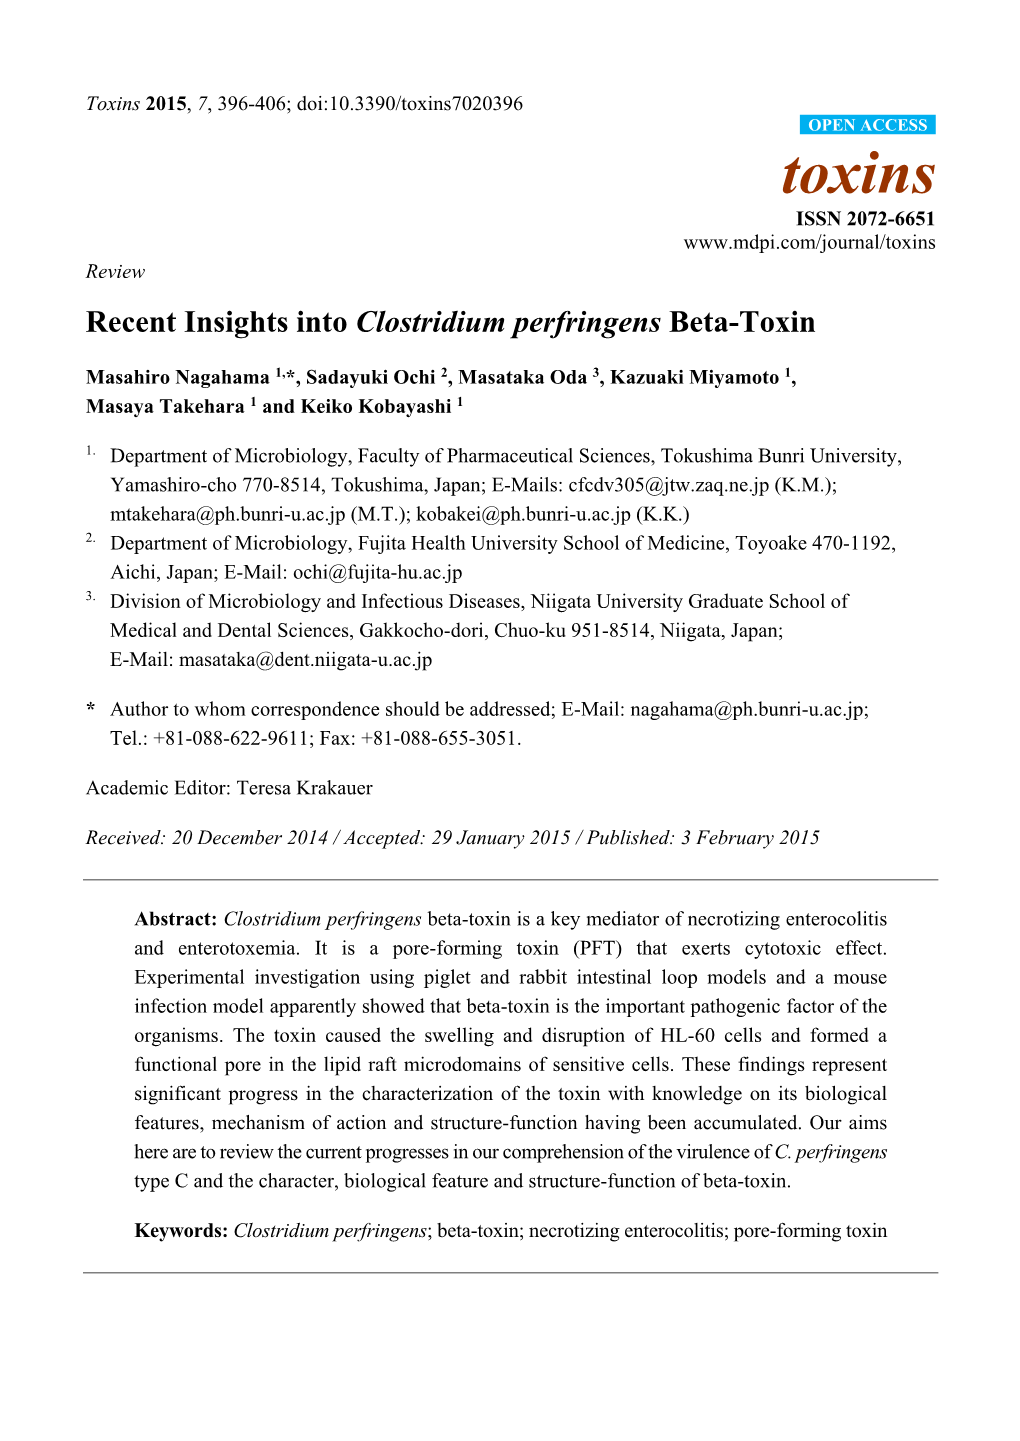 Recent Insights Into Clostridium Perfringens Beta-Toxin